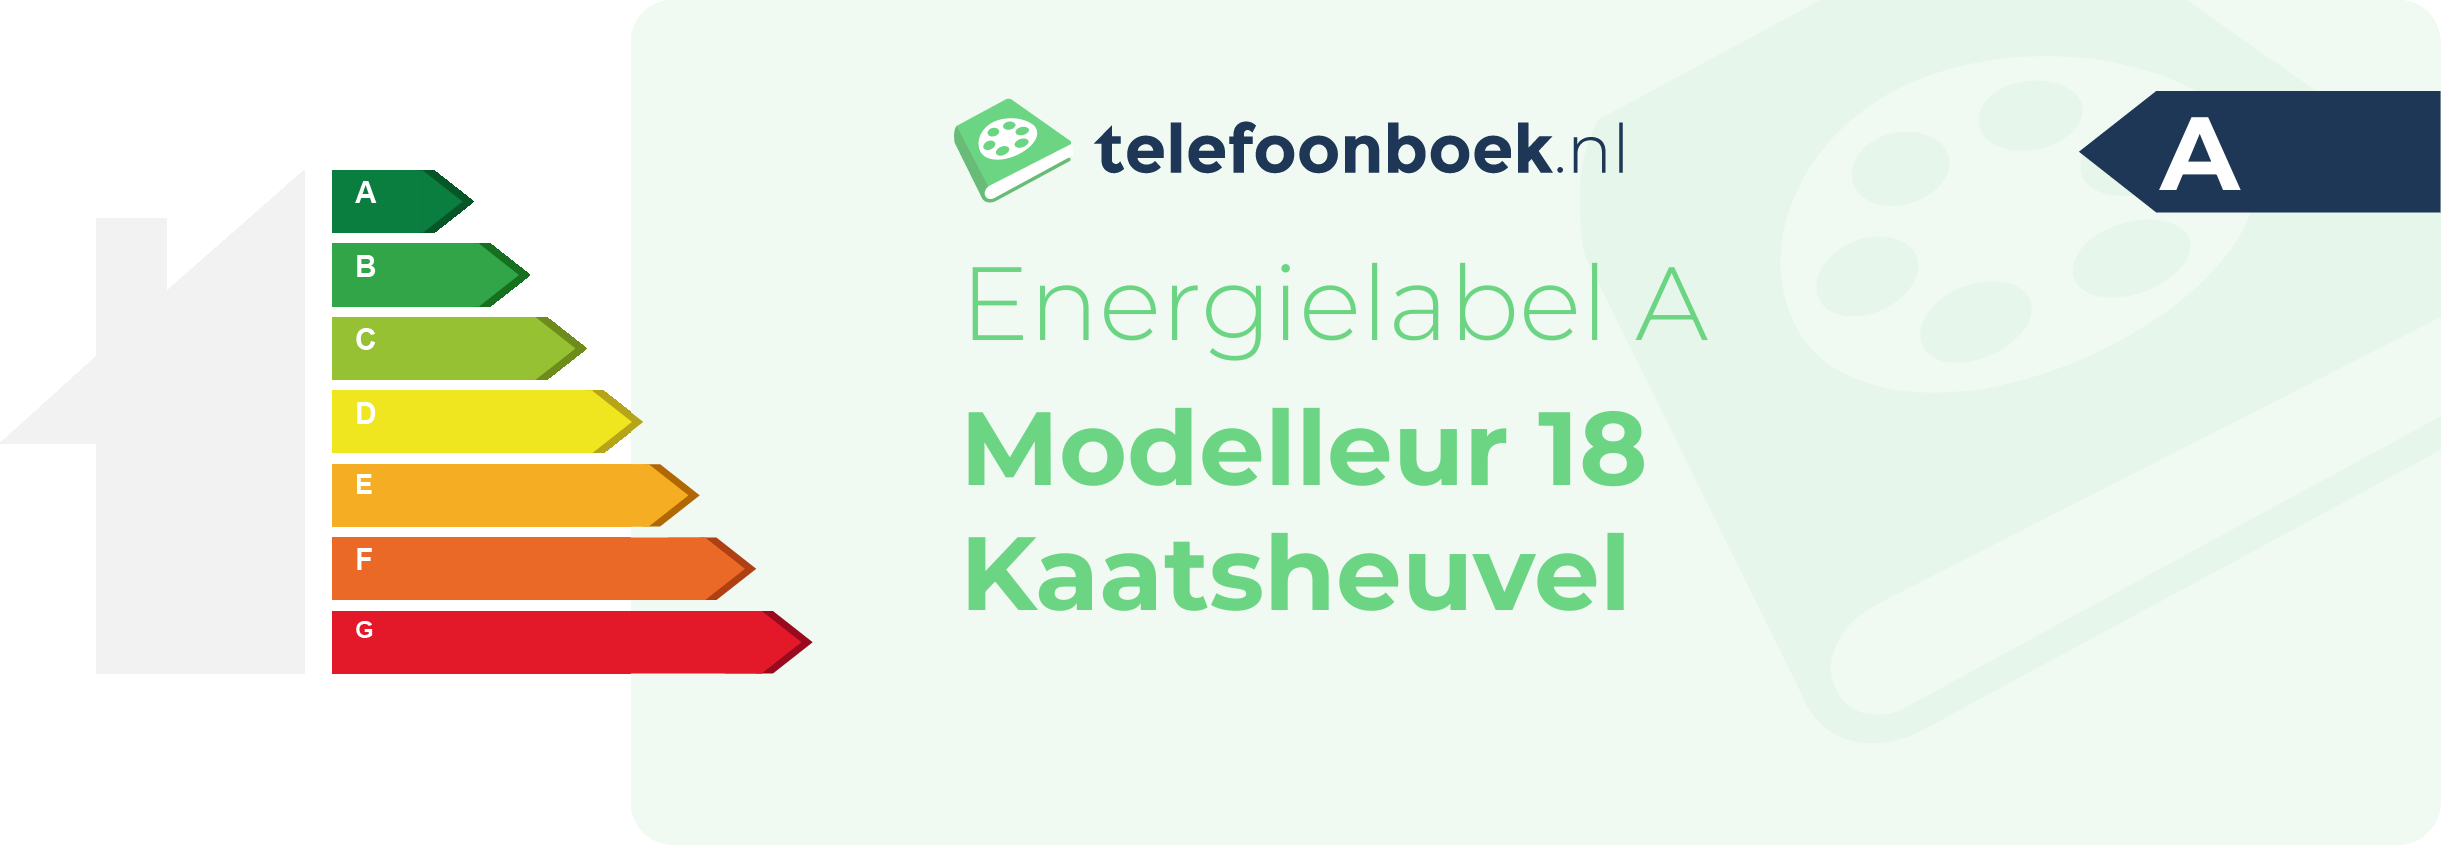 Energielabel Modelleur 18 Kaatsheuvel